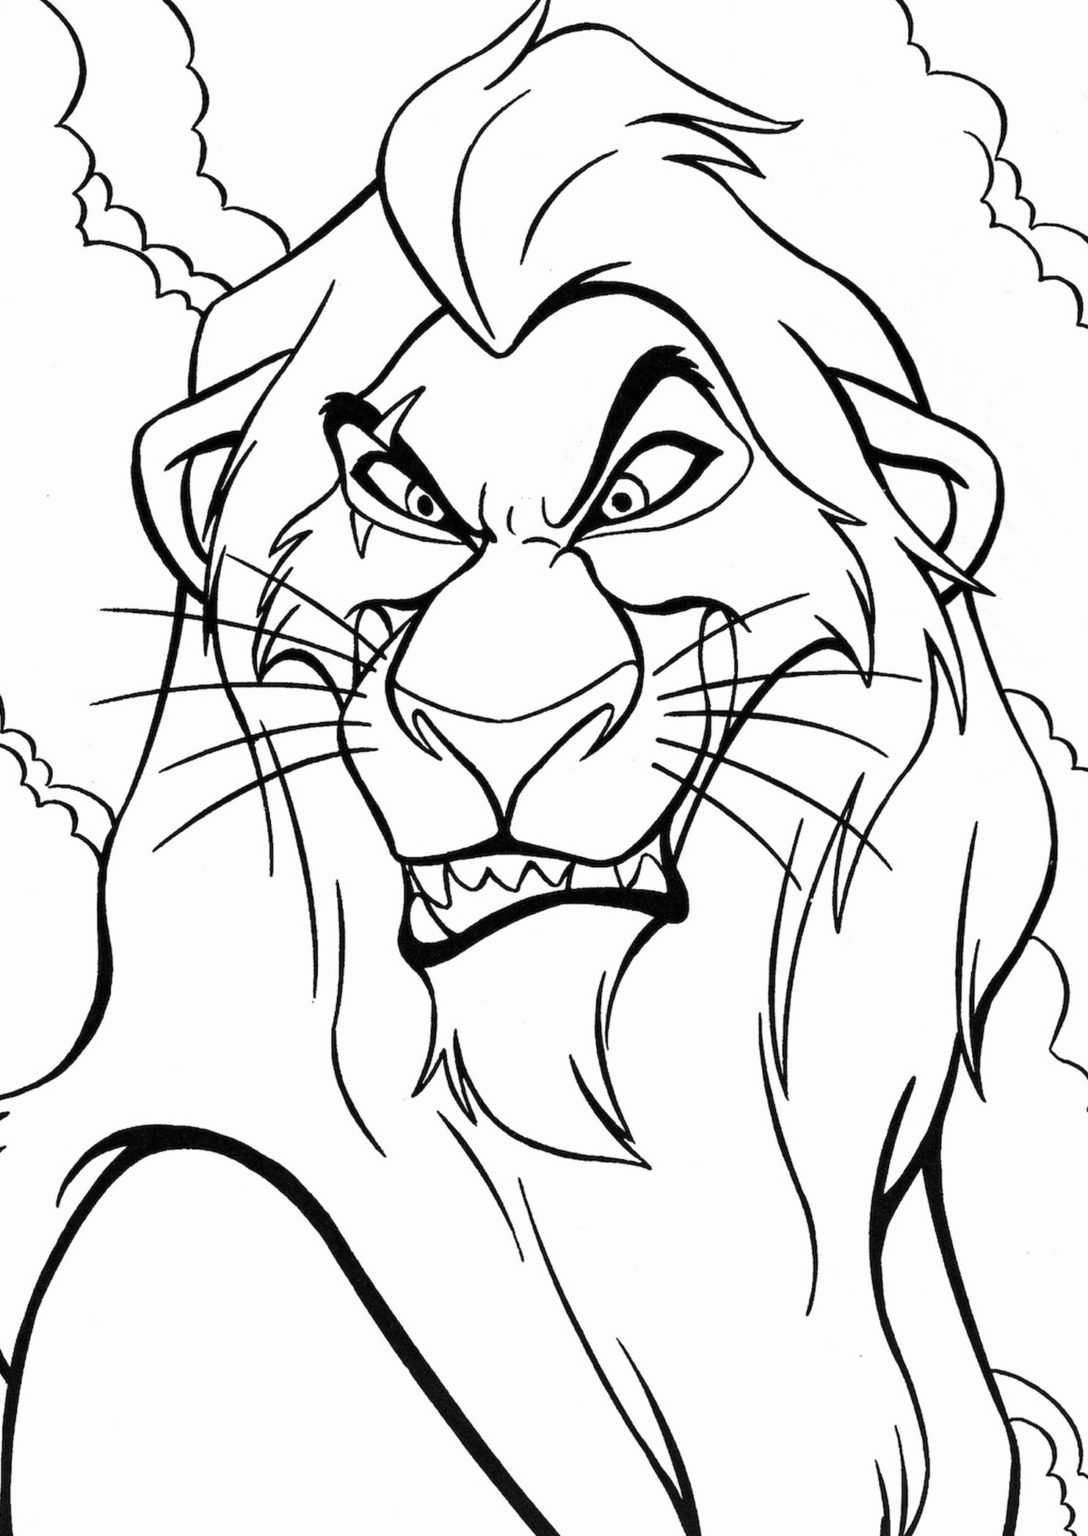 Disney - Vamos colorir - O Rei Leão